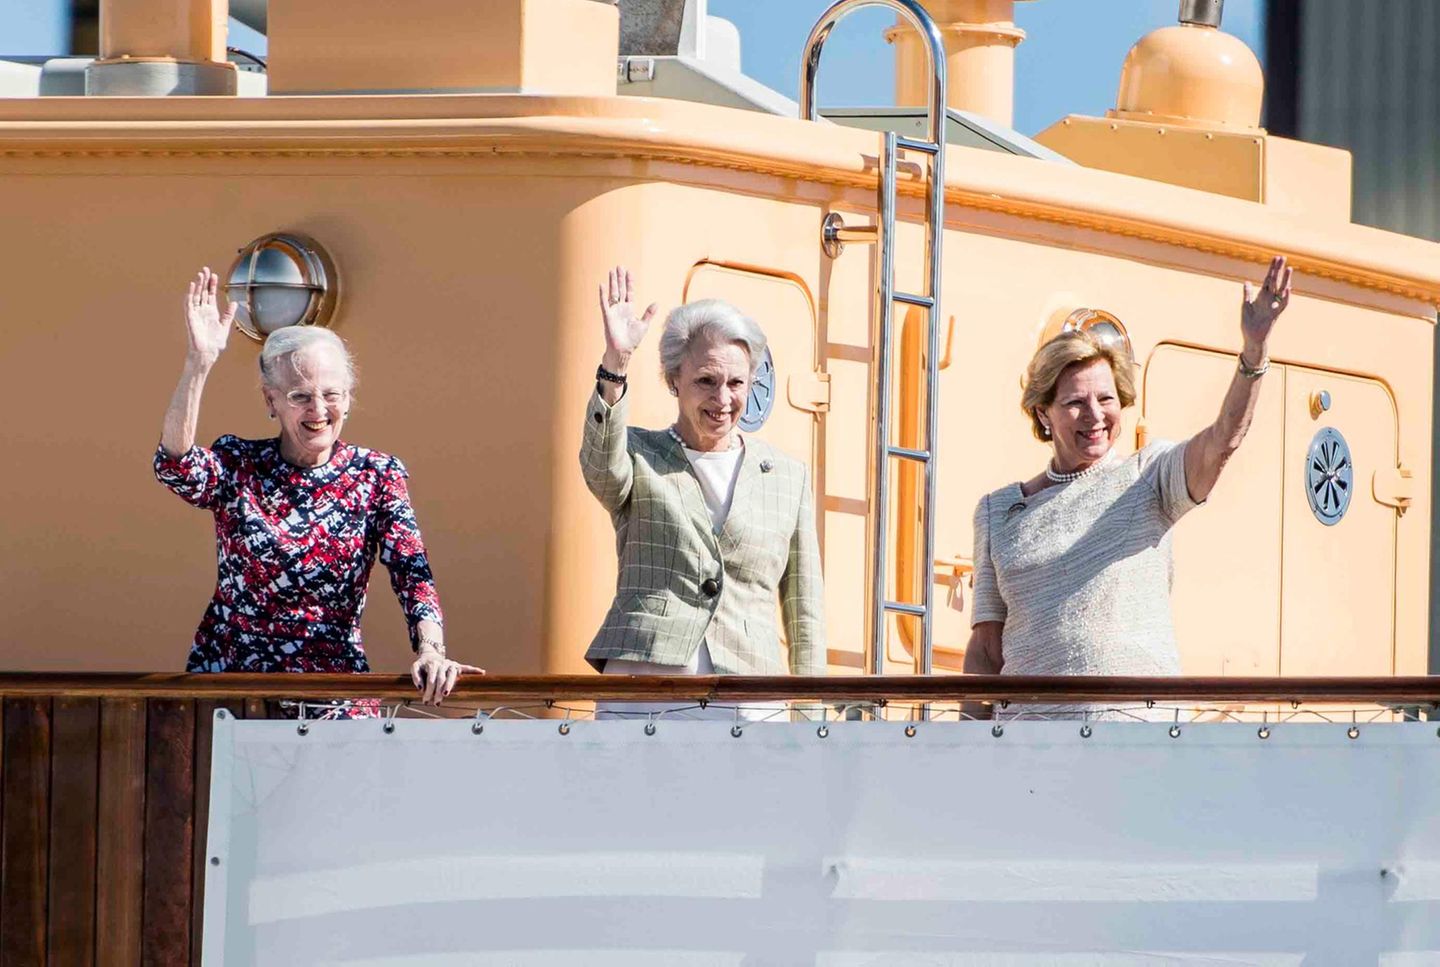 5. Mai 2018  Reise mit Nostalgiewert: Königin Margrethe und ihre beiden jüngeren Schwestern Benedikte und Anne-Marie, die ehemalige Königin von Griechenland, schippern mit der königlichen Jacht gemeinsam nach Kolding. Es ist mehrere Jahrzehnte her, dass die drei gemeinsam an Bord der Dannabrog gingen, um zu einem Termin zu fahren.